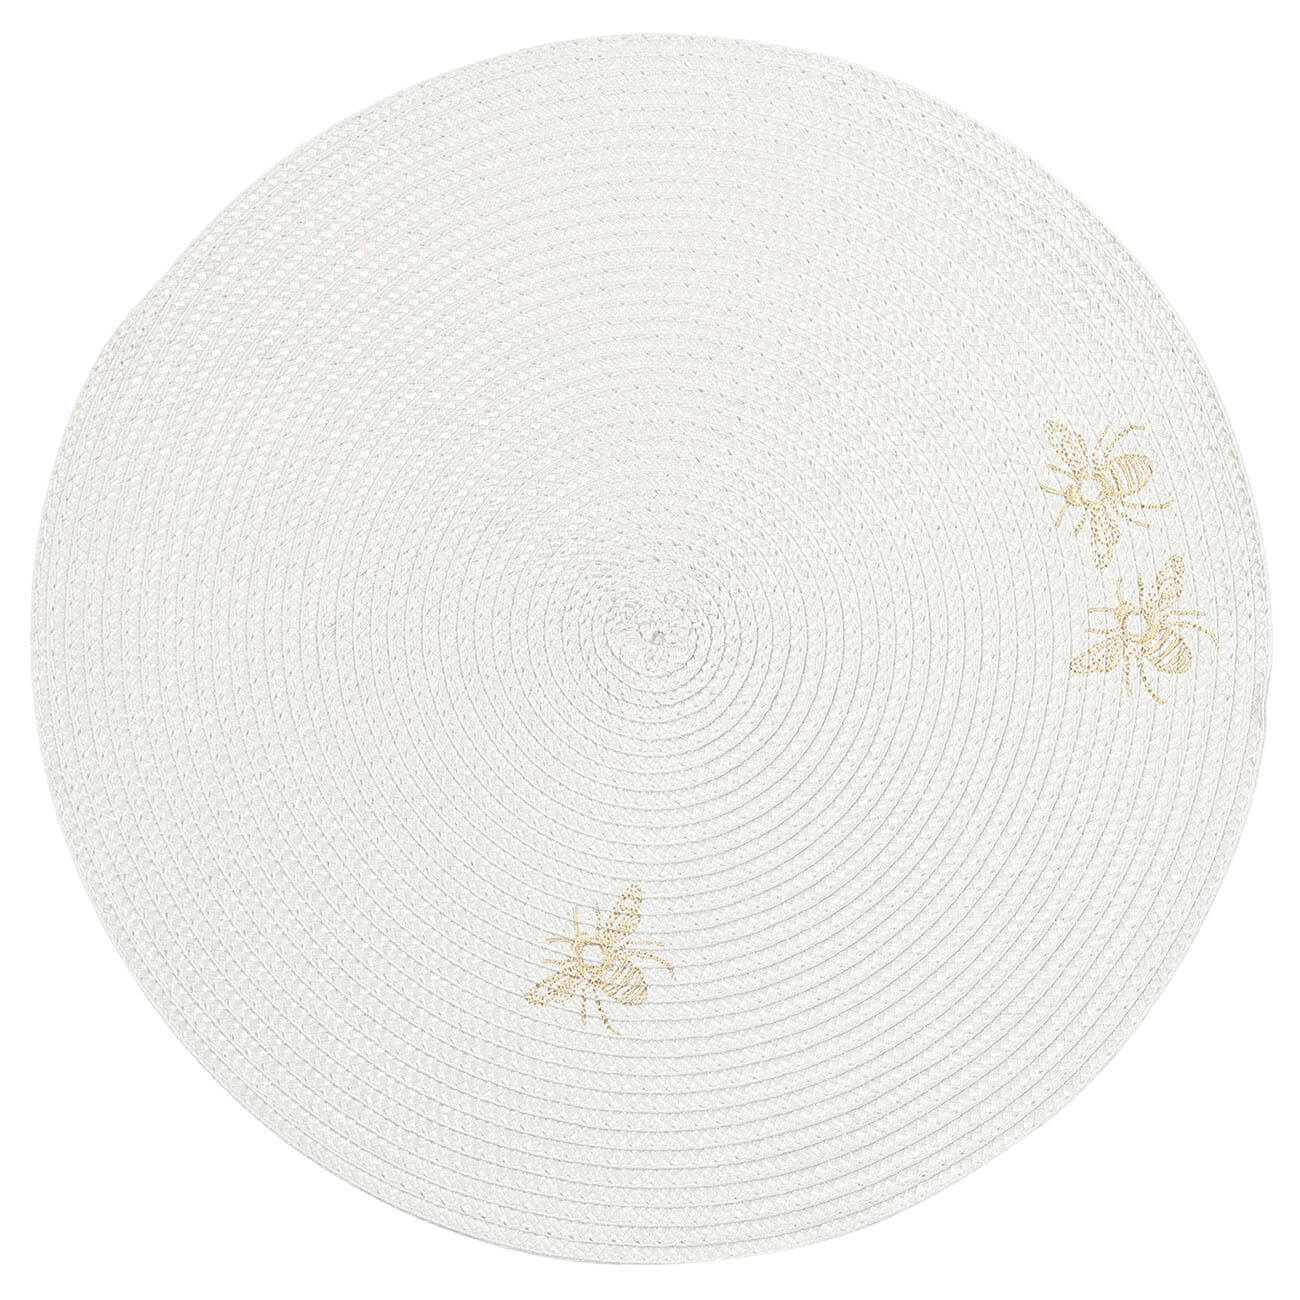 Салфетка под приборы, 38 см, полипропилен/ПЭТ, круглая, светло-серая, Пчелы, Circle embroidery насадка для ершика 8×10 см полипропилен